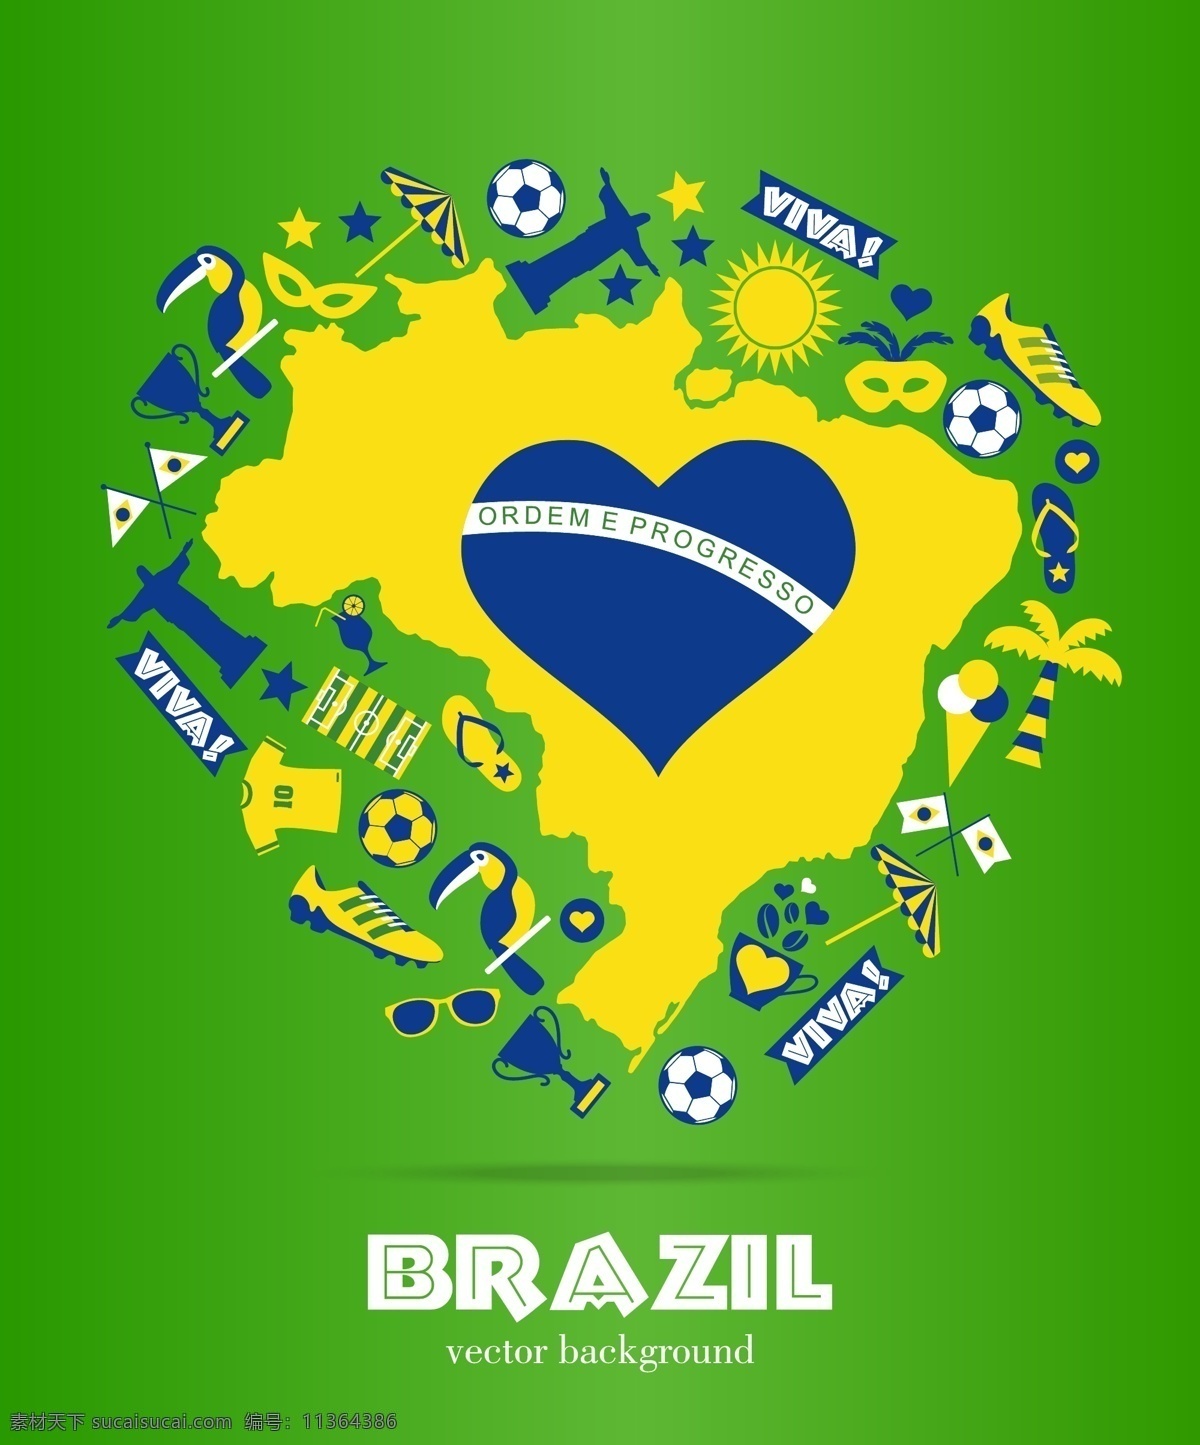 巴西 世界杯 矢量 巴西国旗 巴西世界杯 旅行元素 模板 设计稿 素材元素 纹样设计 足球赛 巴西地图 足球纹样 心形纹样 国旗纹样 源文件 矢量图